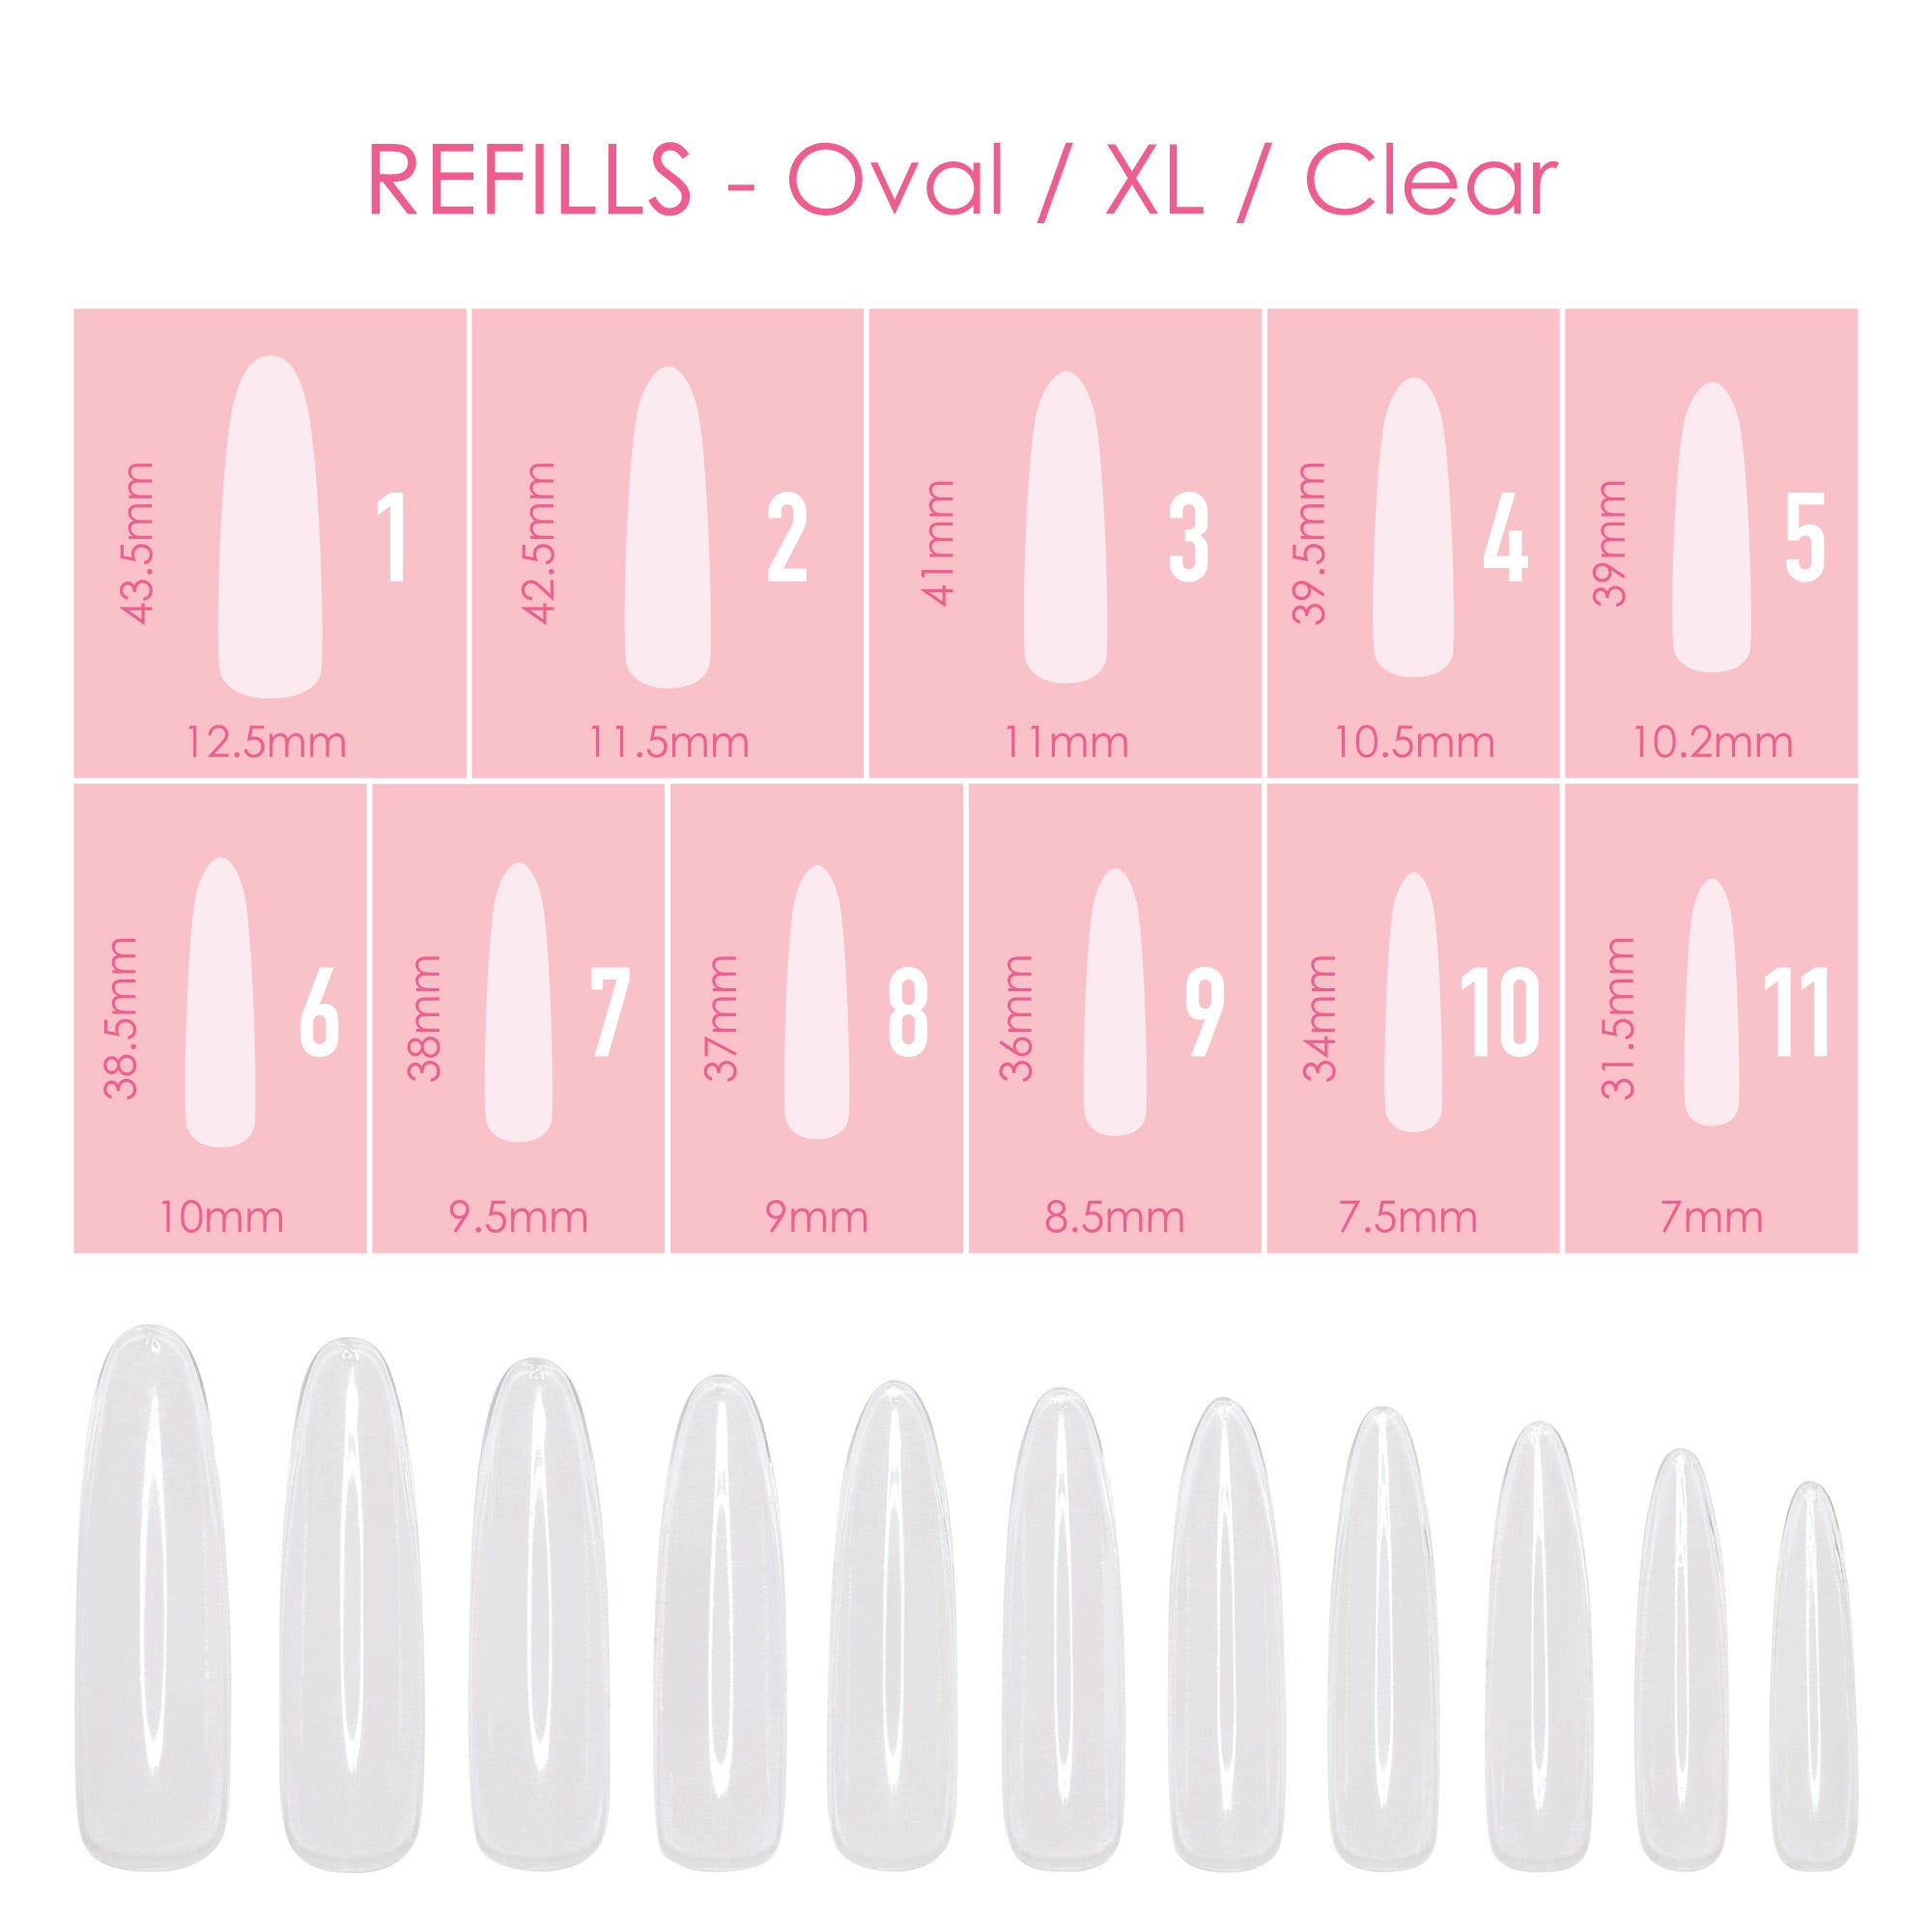 Nail size chart | Gel nails, Acrylic nail set, Almond acrylic nails